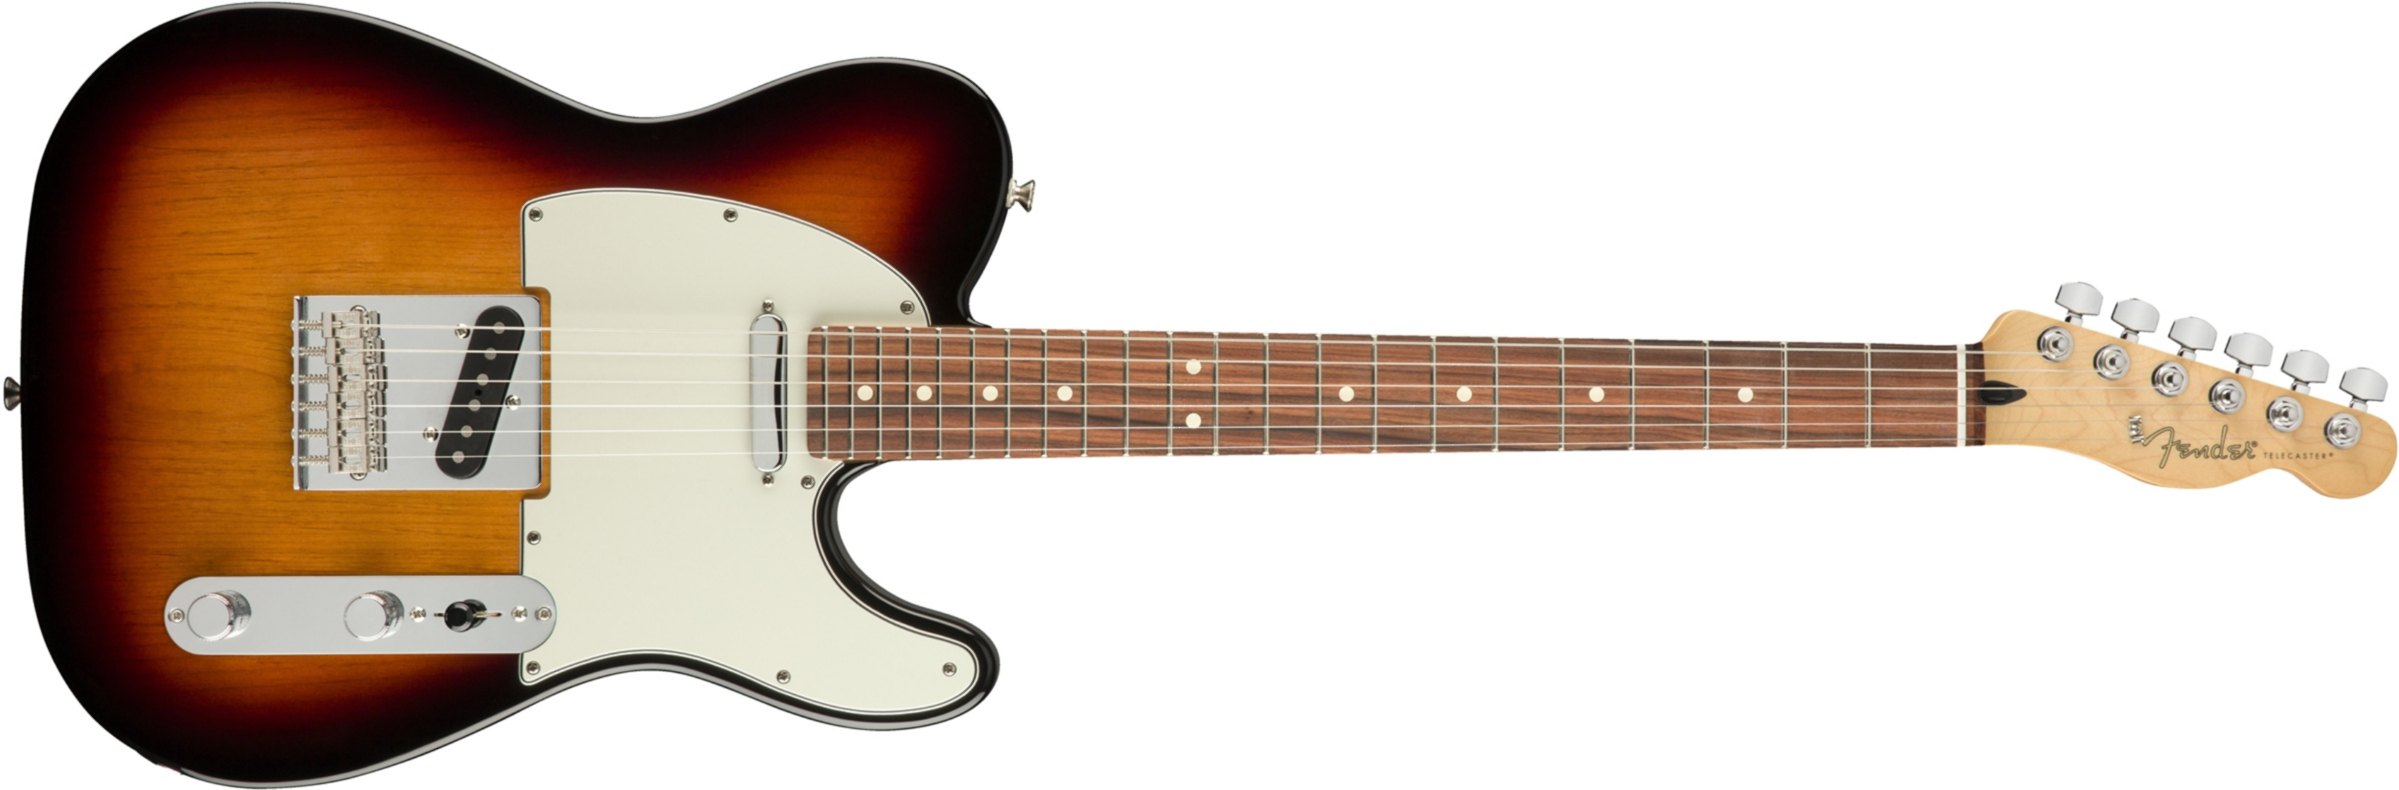 Fender Tele Player Mex Ss Pf - 3-color Sunburst - Guitarra eléctrica con forma de tel - Main picture